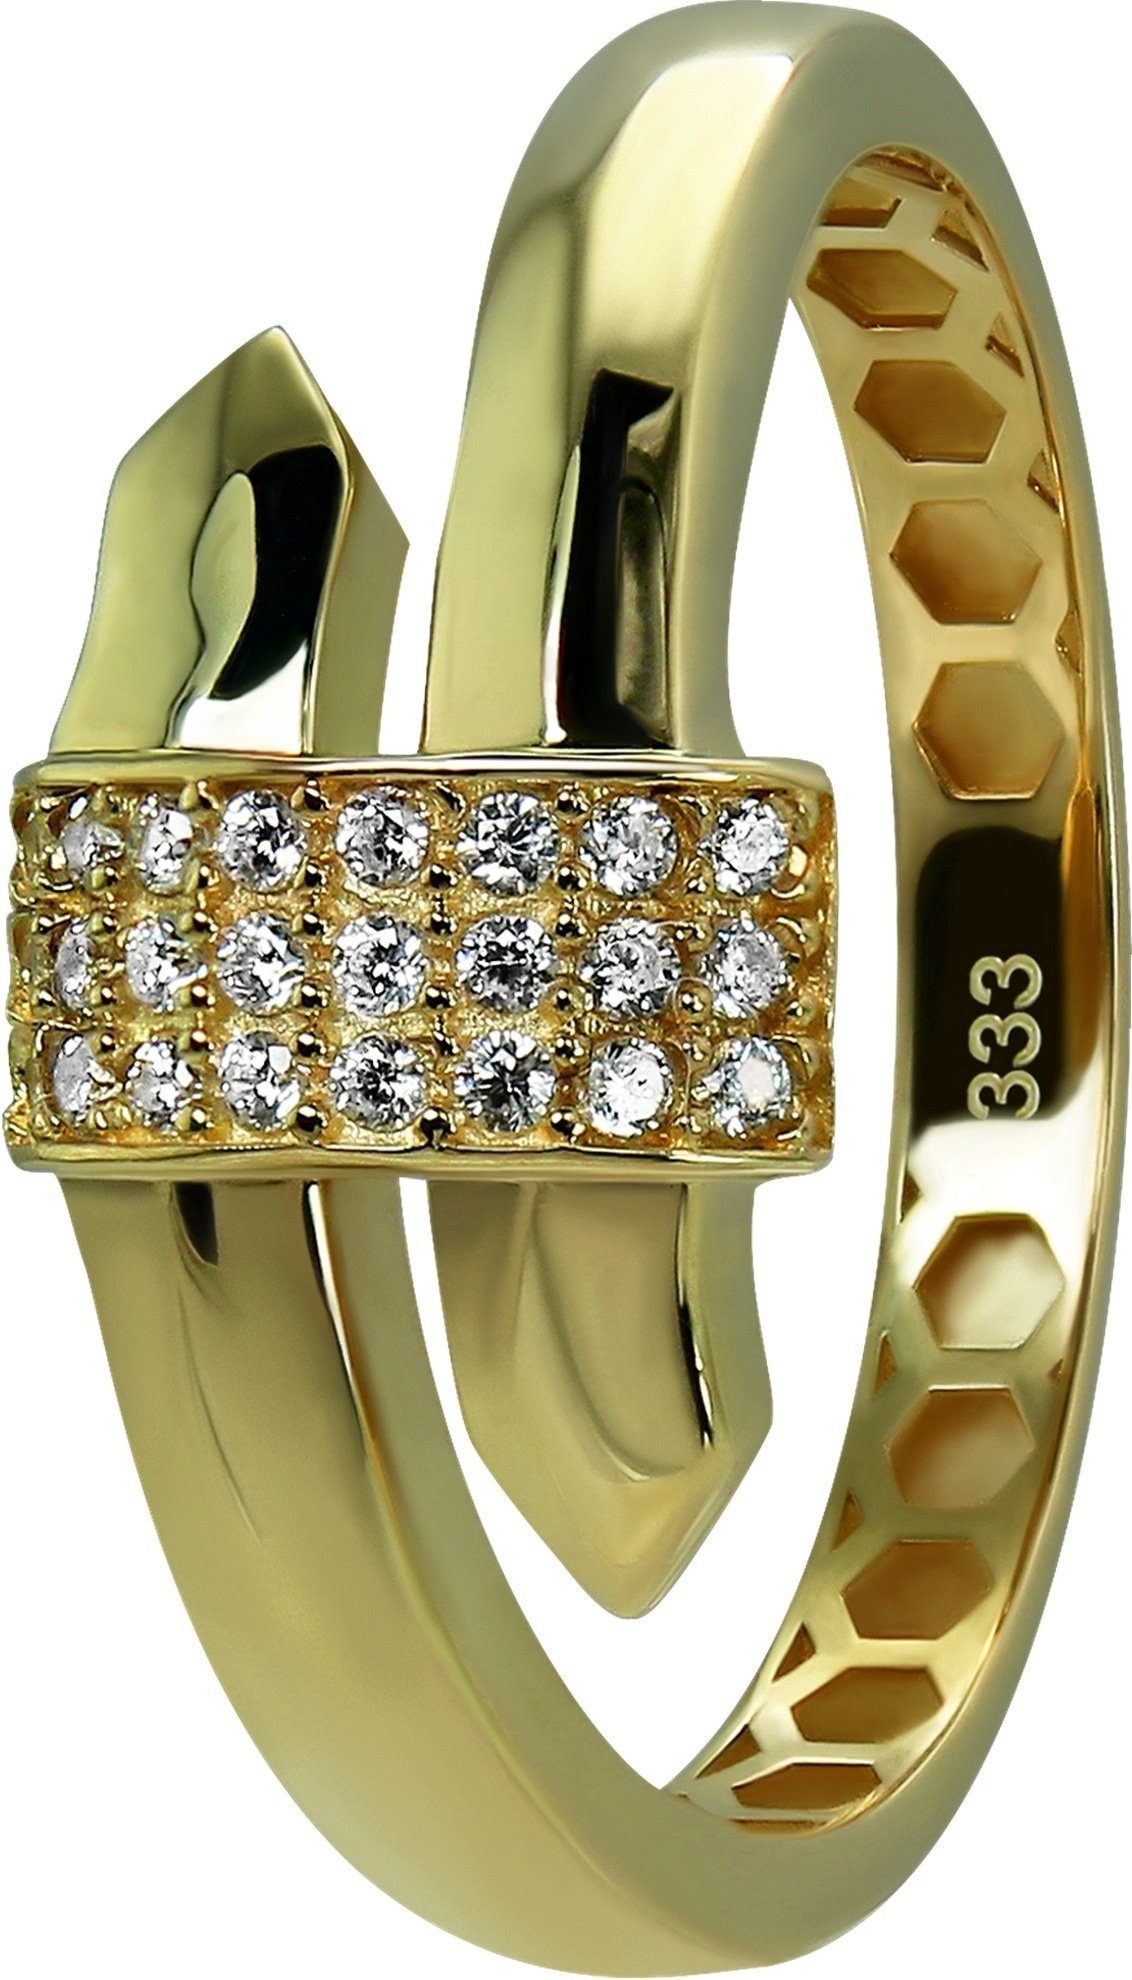 (Fingerring), Ring Goldring 333 weiß GoldDream Gr.58 Farbe: Glamour Gelbgold GoldDream Gold gold, - Glamour Damen Ring 8 Karat,